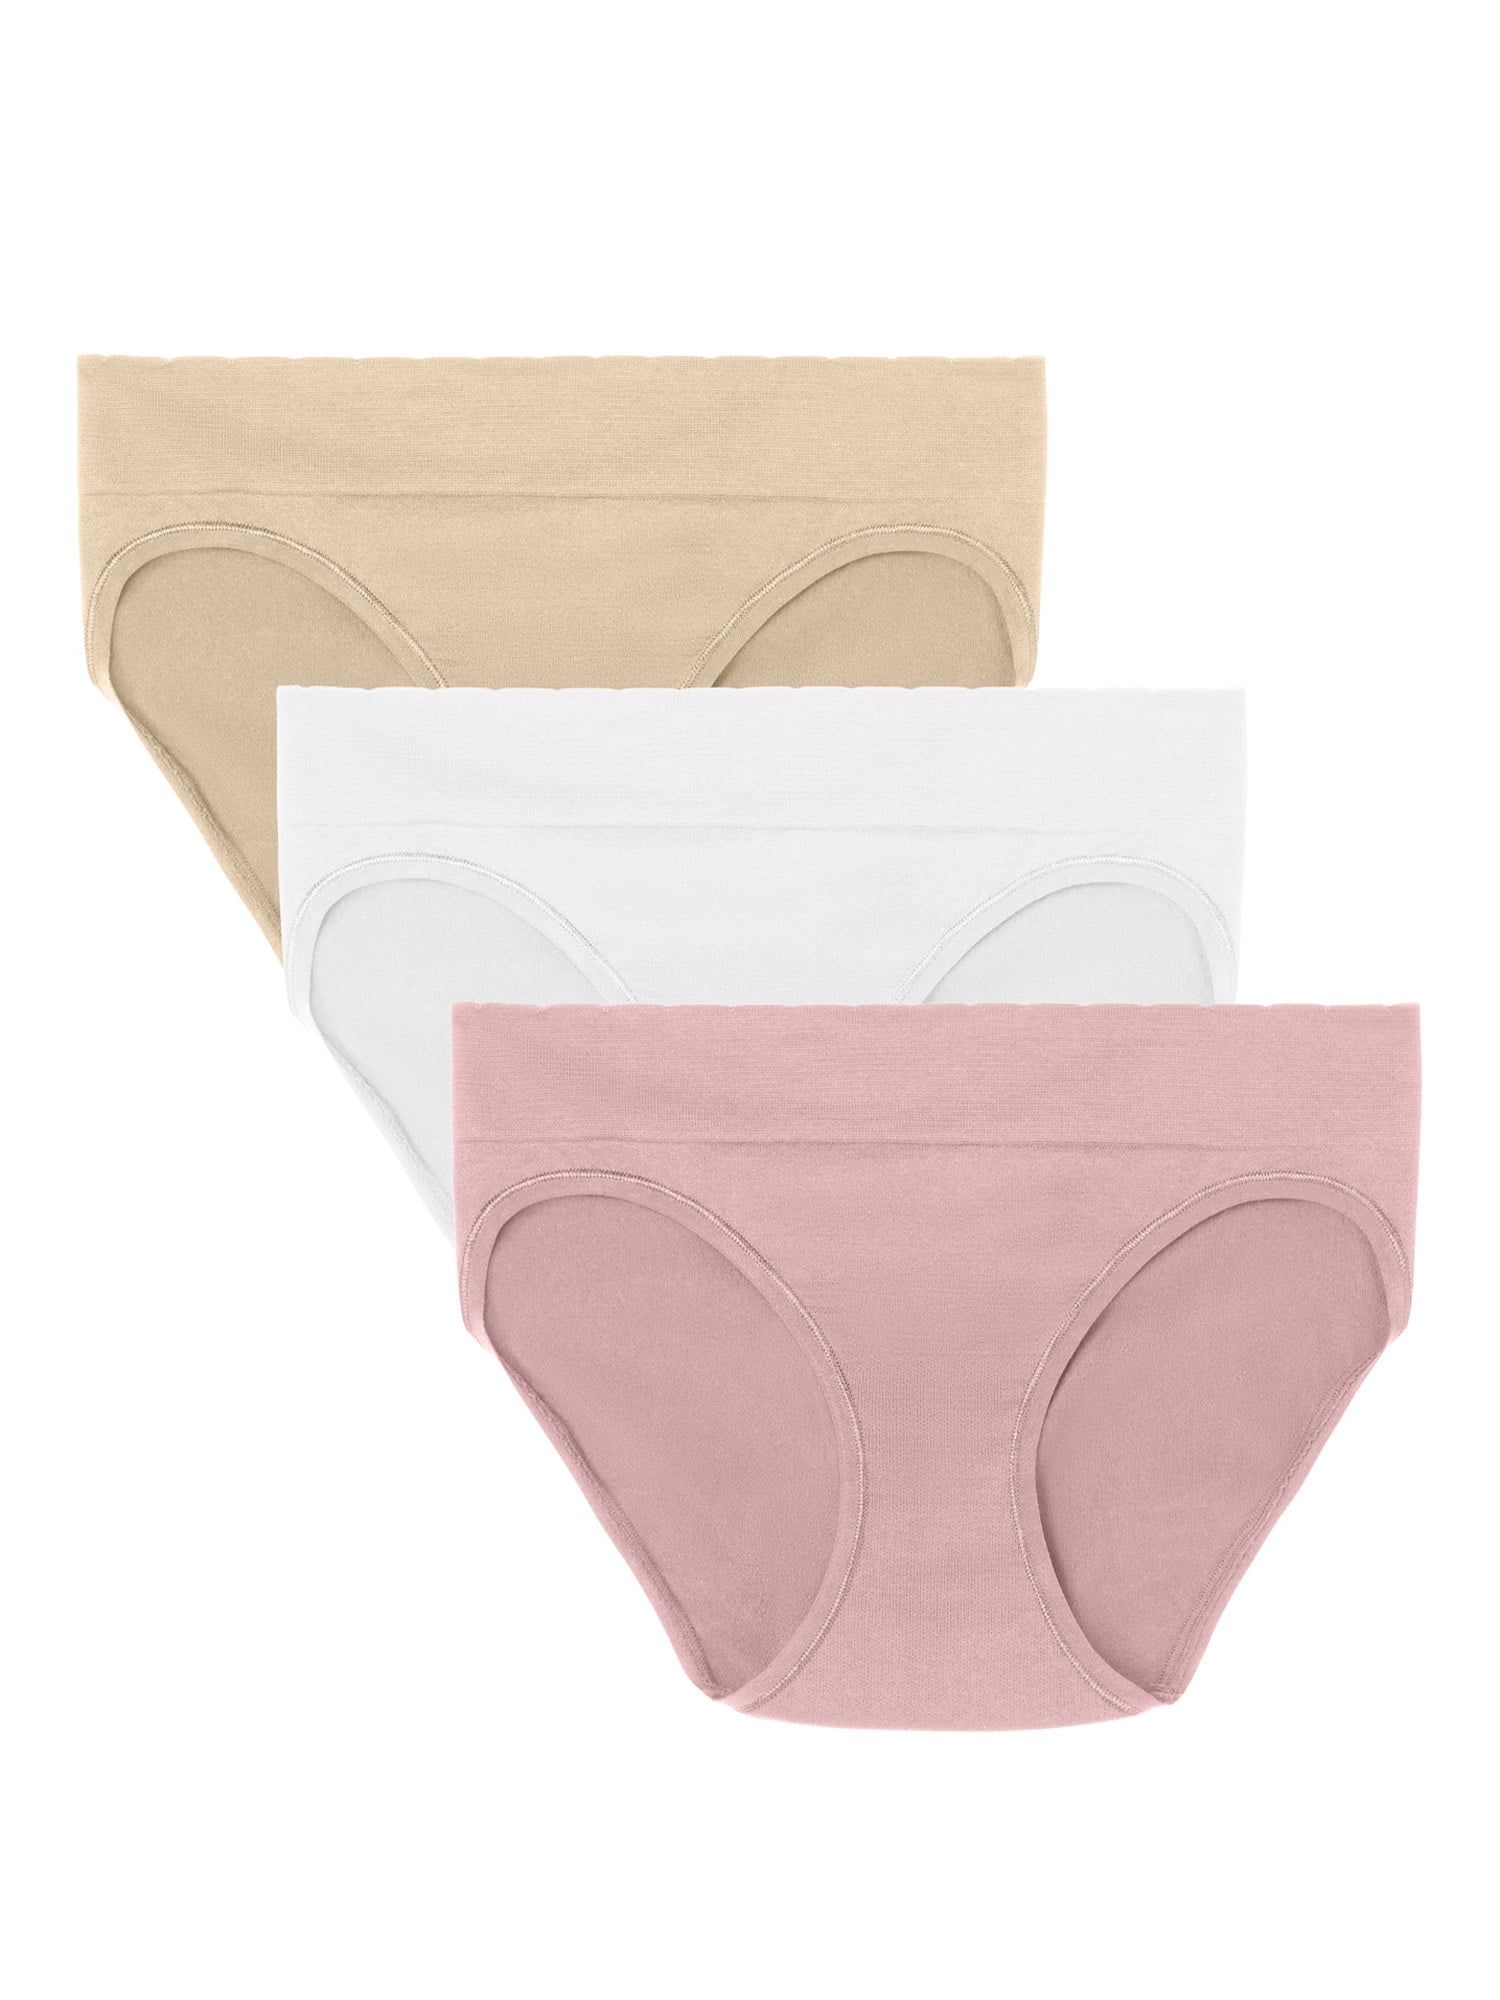 FallSweet No Show High Waist Briefs Underwear for Women Seamless Panties  Multi Pack 